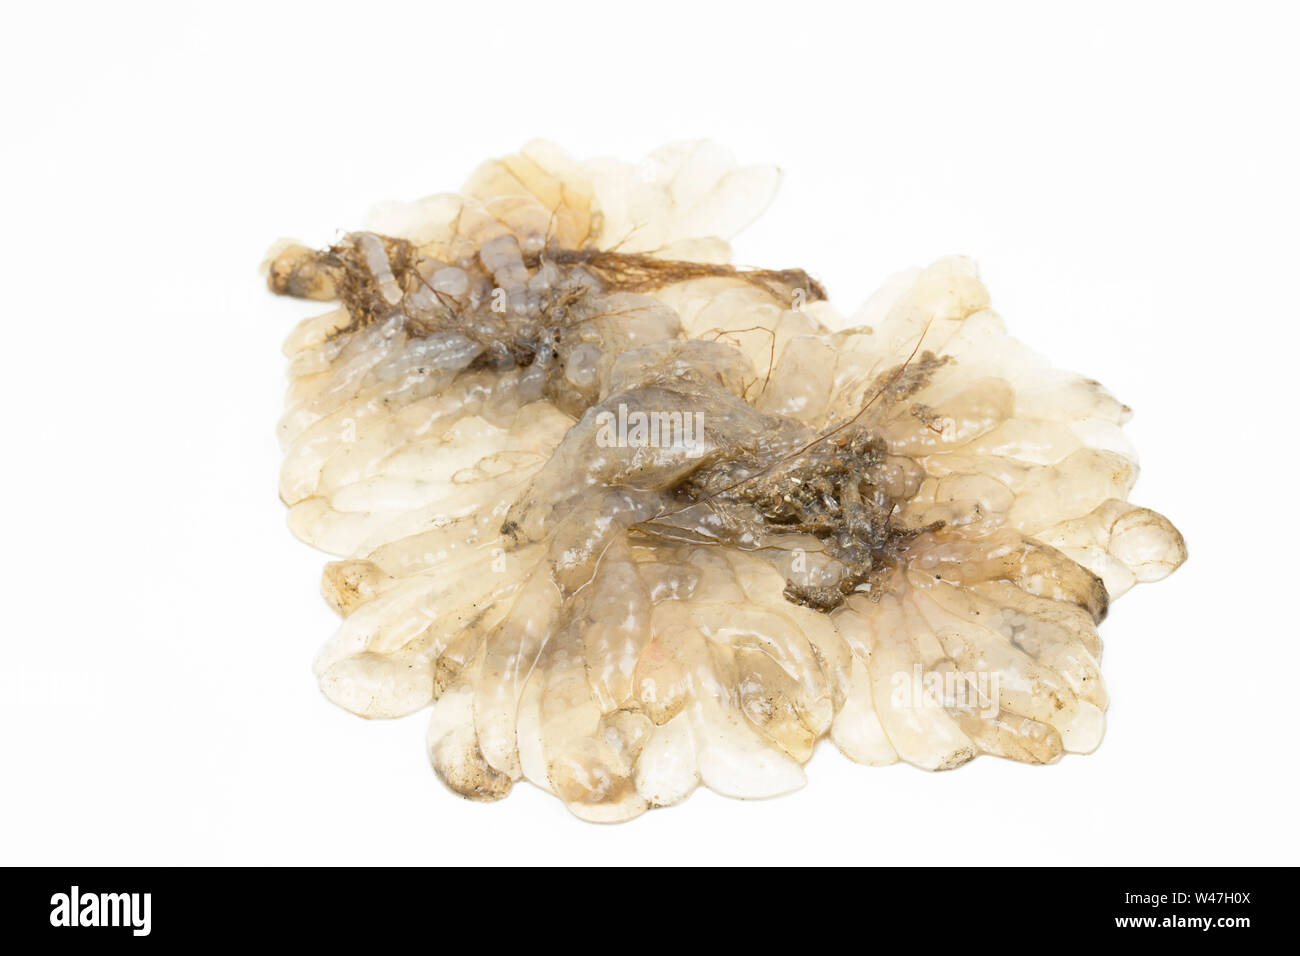 Un intrico di calamari uova, o spawn, trovata nel Canale della Manica e fotografati su sfondo bianco in un studio. Il Dorset England Regno Unito GB Foto Stock